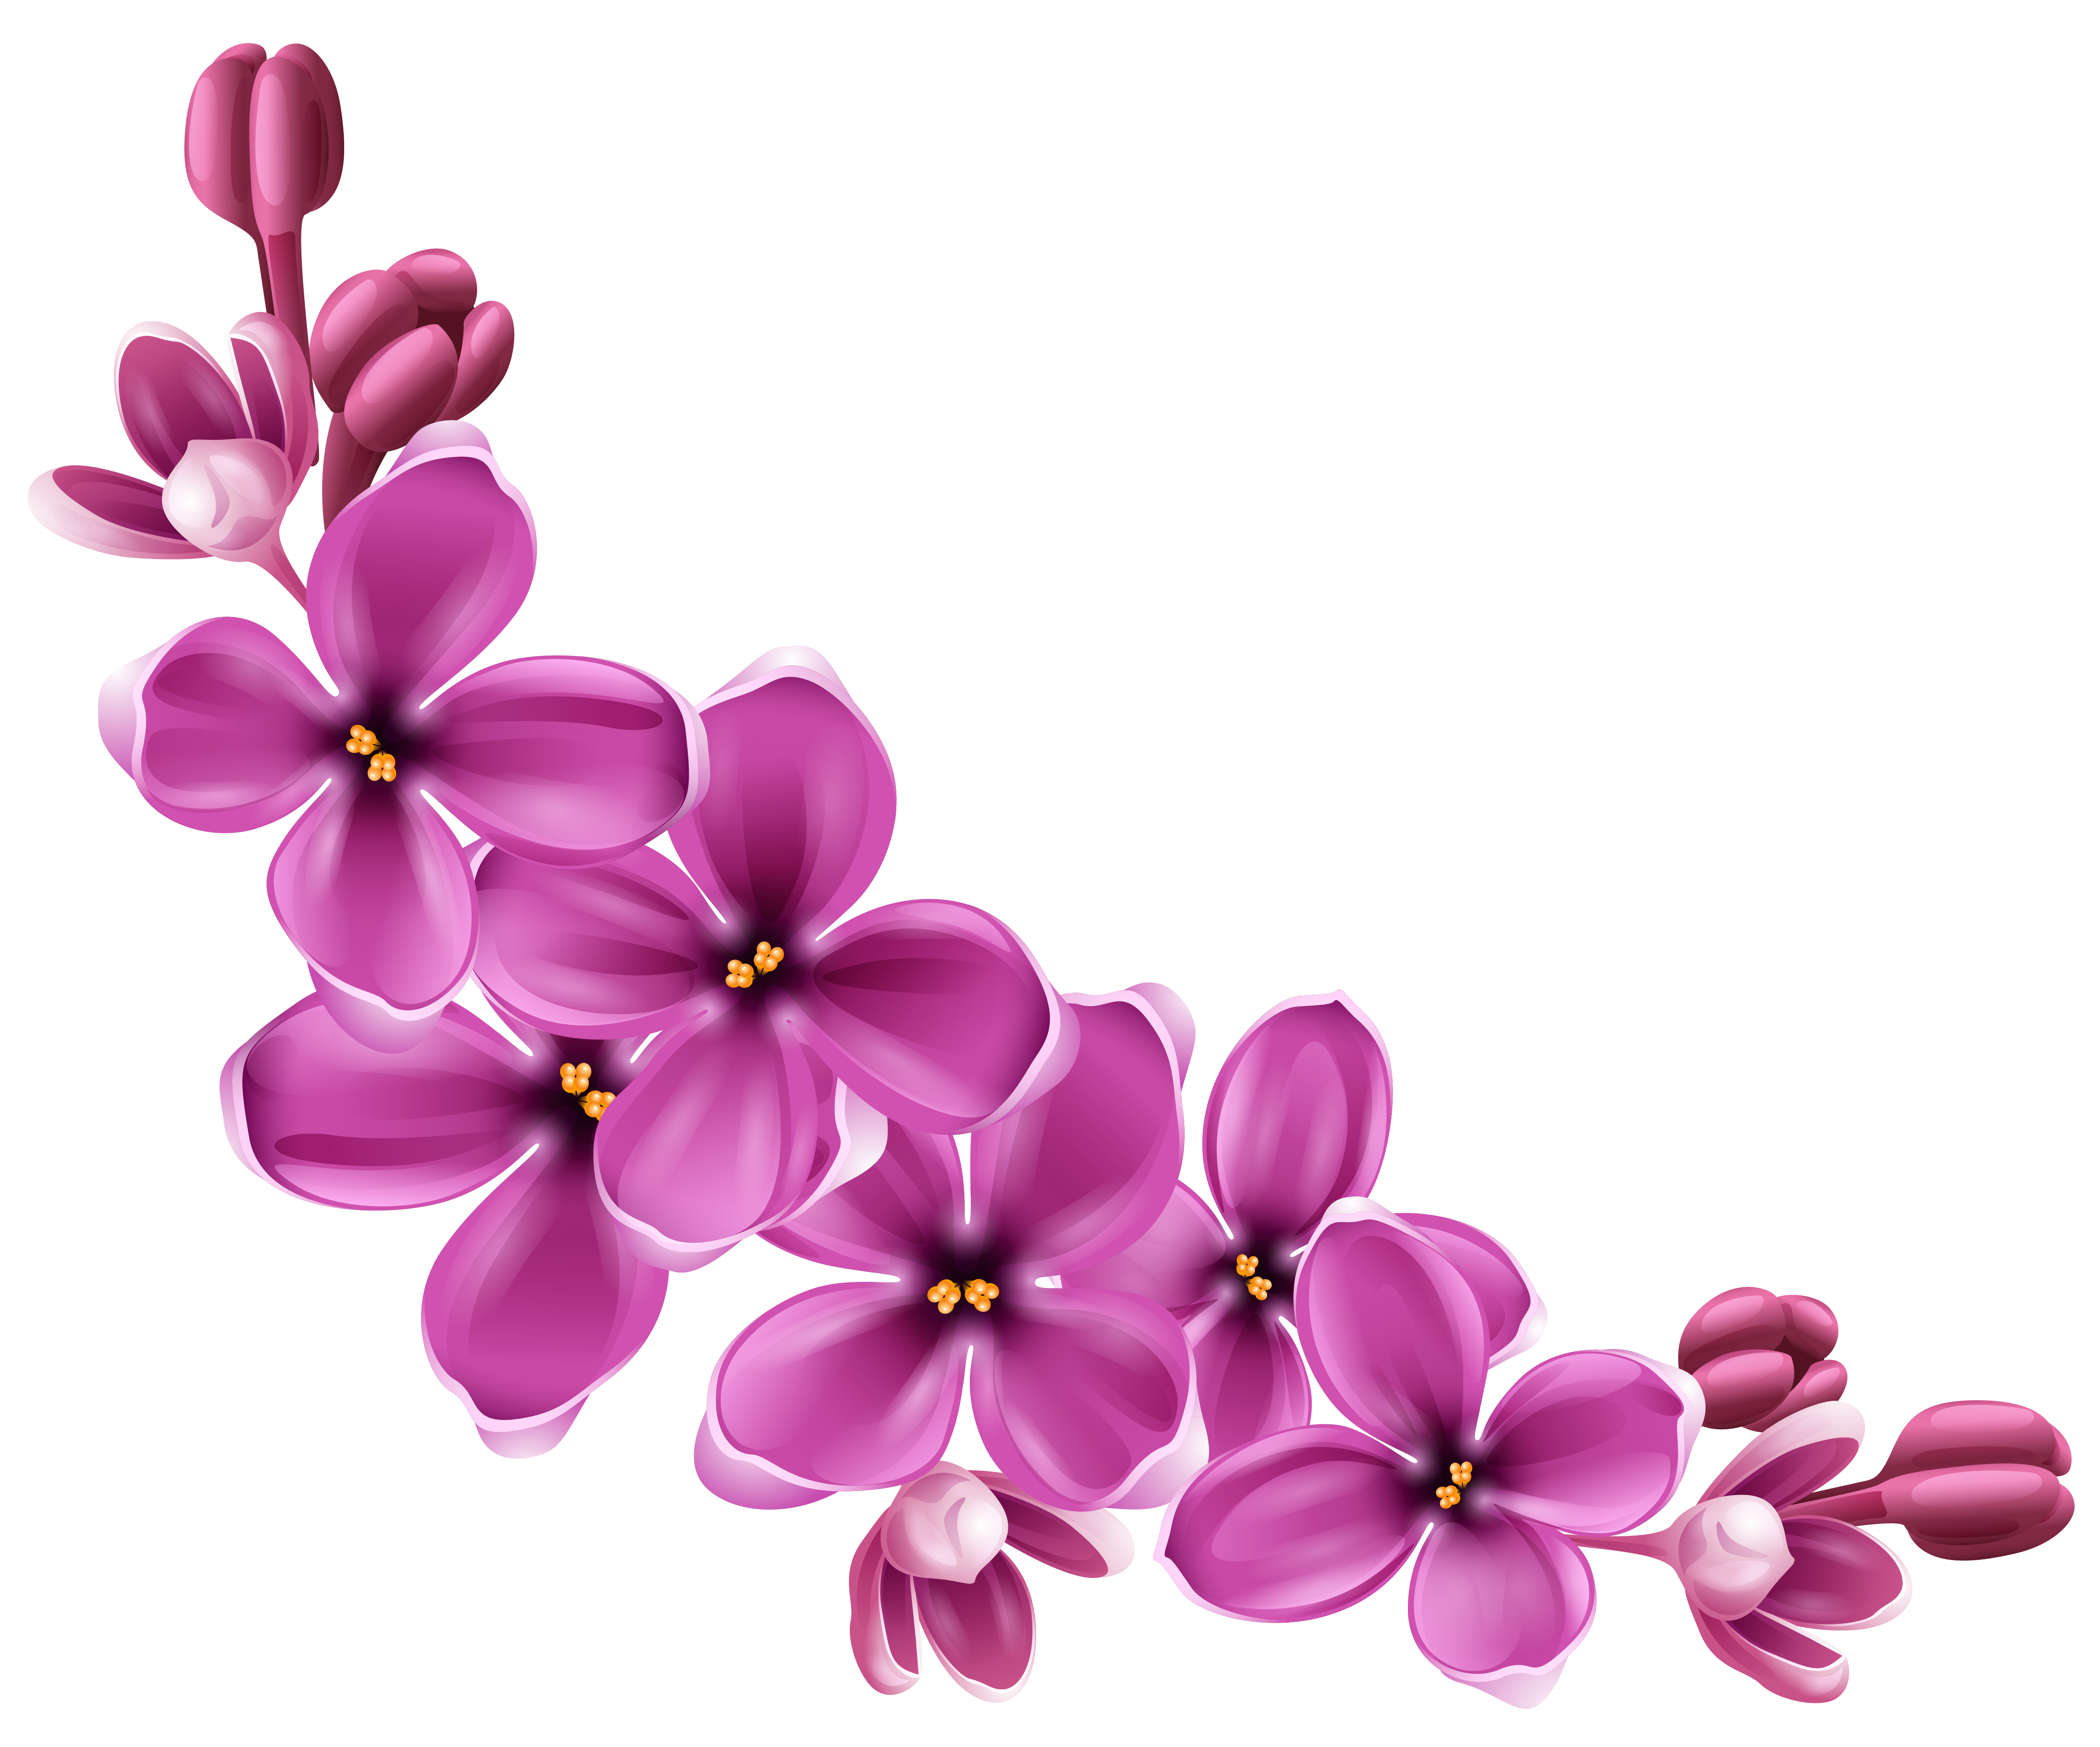 Bahar çiçeği çiçek PNG şeffaf görüntü